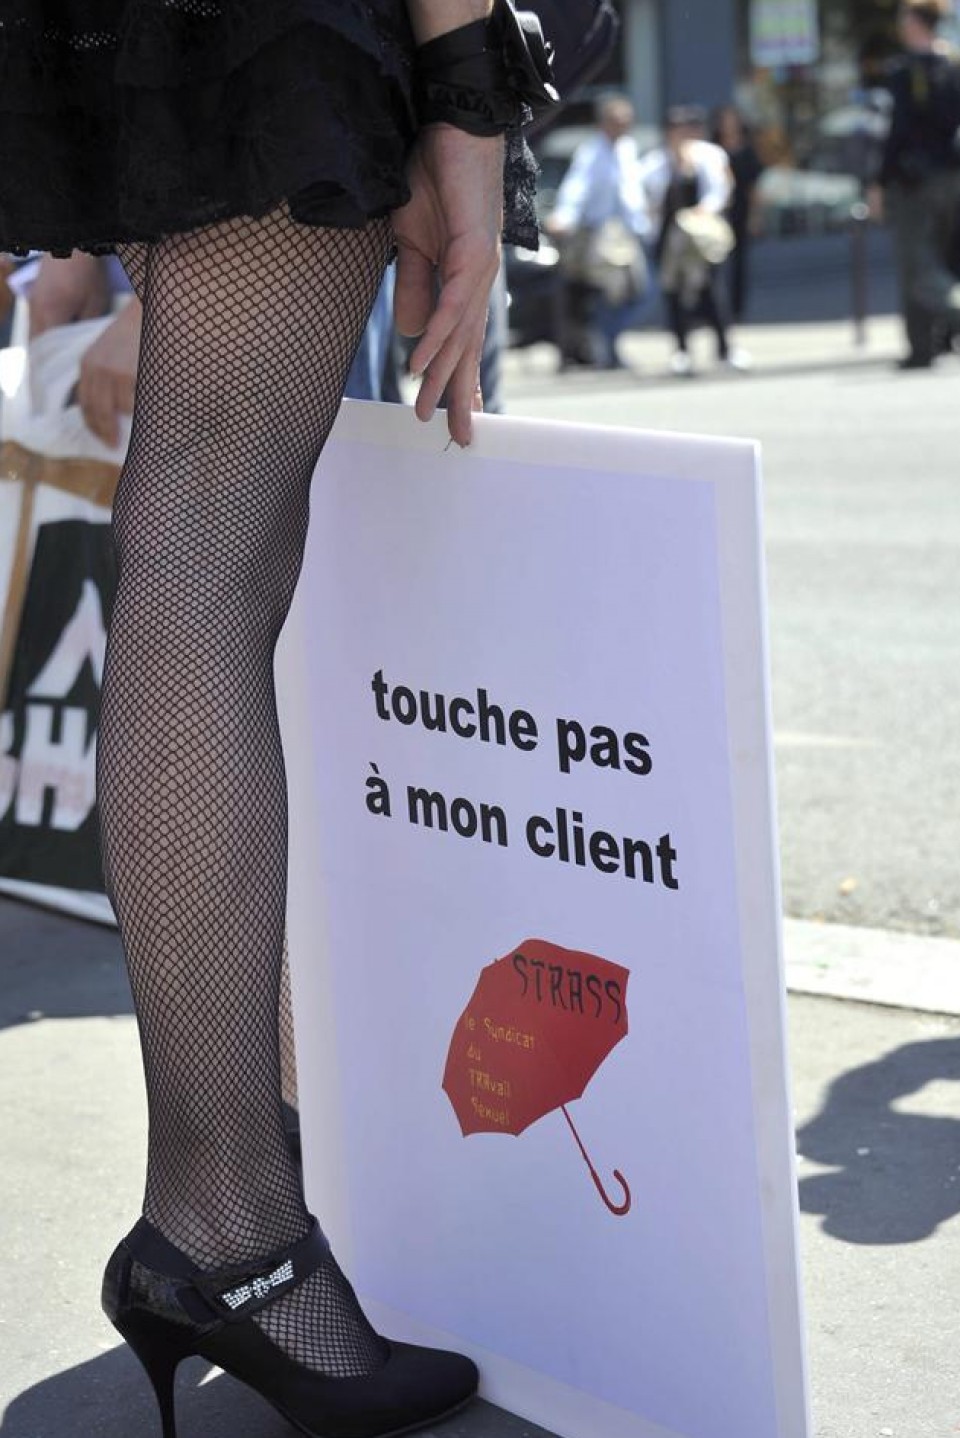 La Asamblea Nacional francesa aprueba multar a clientes de prostitutas